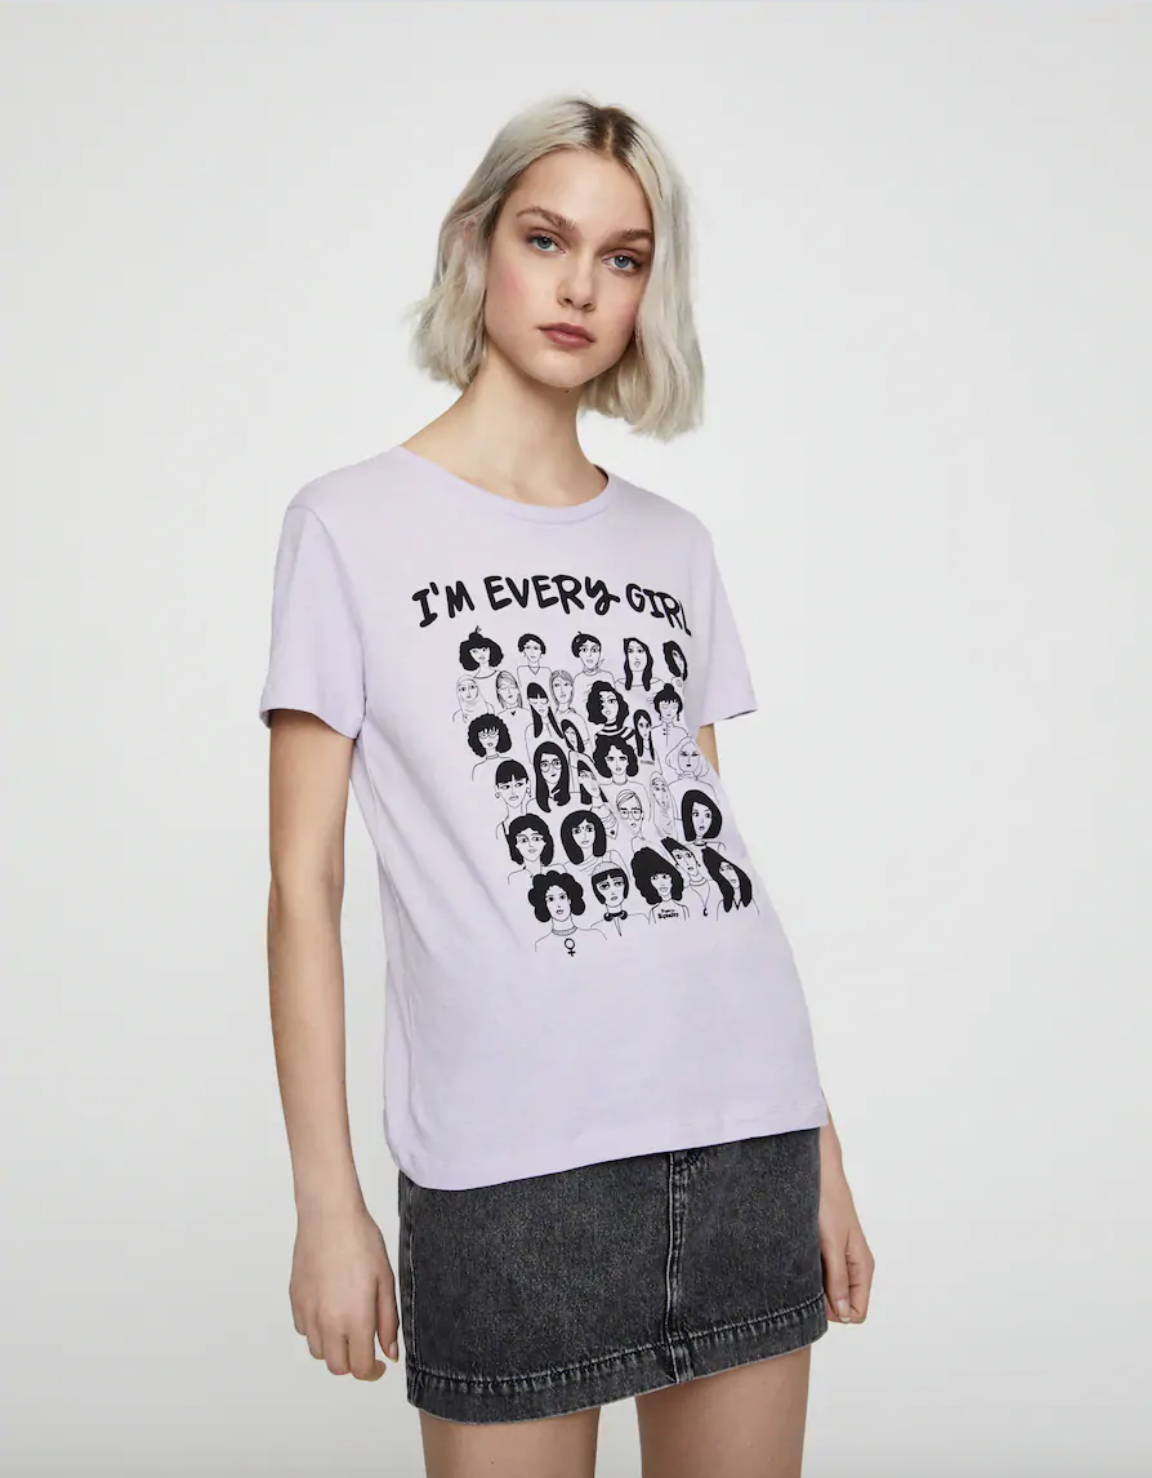 Pull&Bear unas camisetas con mensaje feminista